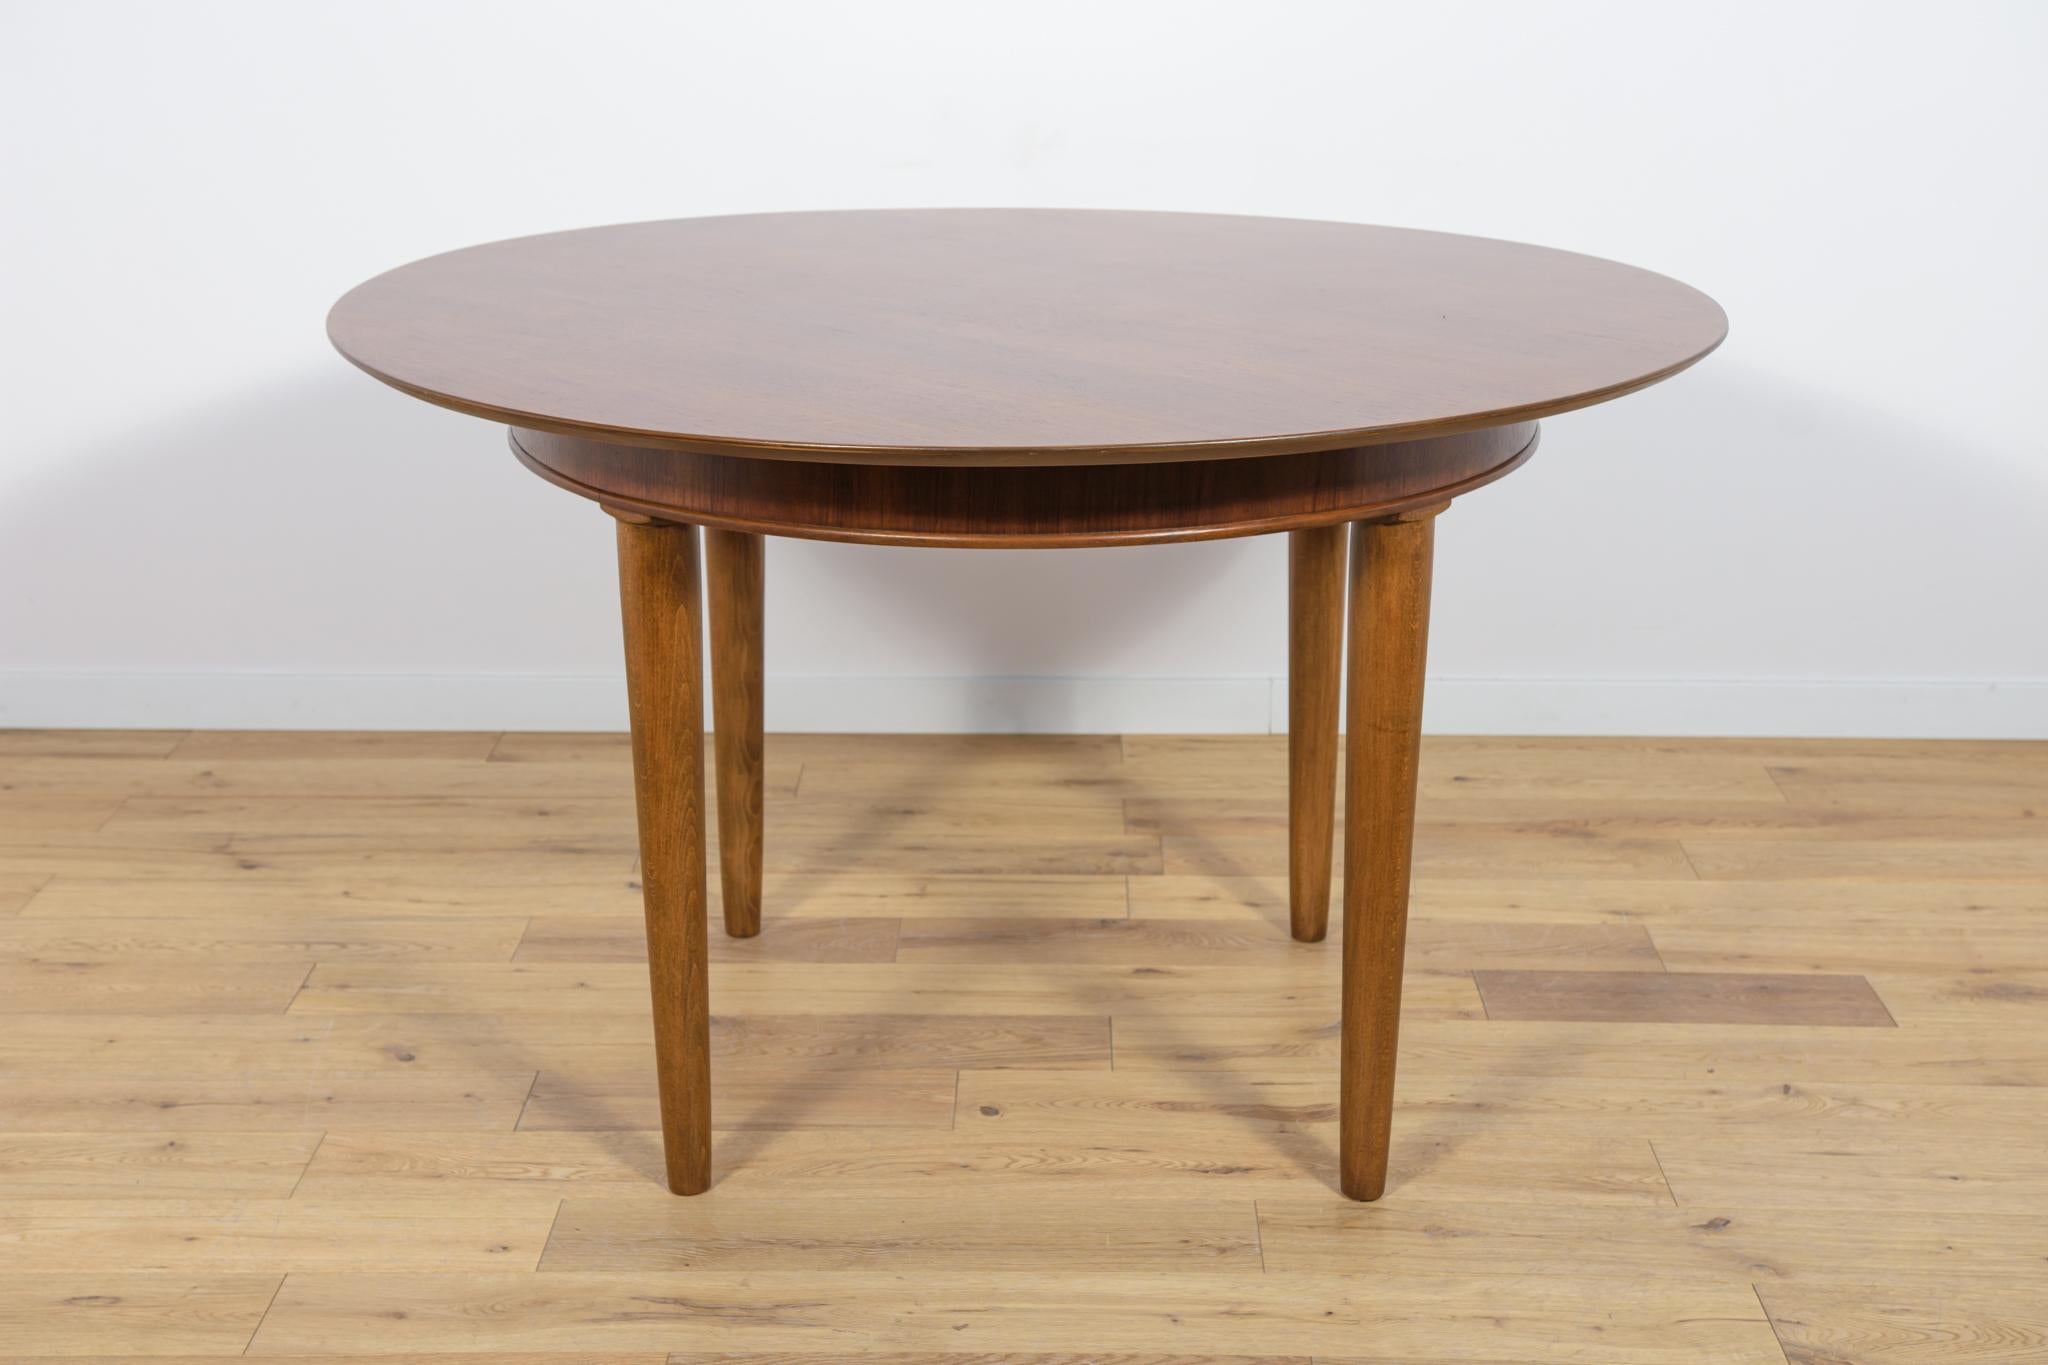 Ein runder Tisch aus Teakholz, hergestellt in Großbritannien in den 1950er Jahren. Der Tisch hat eine interessante Maserung. Die Möbel wurden einer umfassenden schreinerischen Renovierung unterzogen. Es wurde von der alten Oberfläche gereinigt, mit